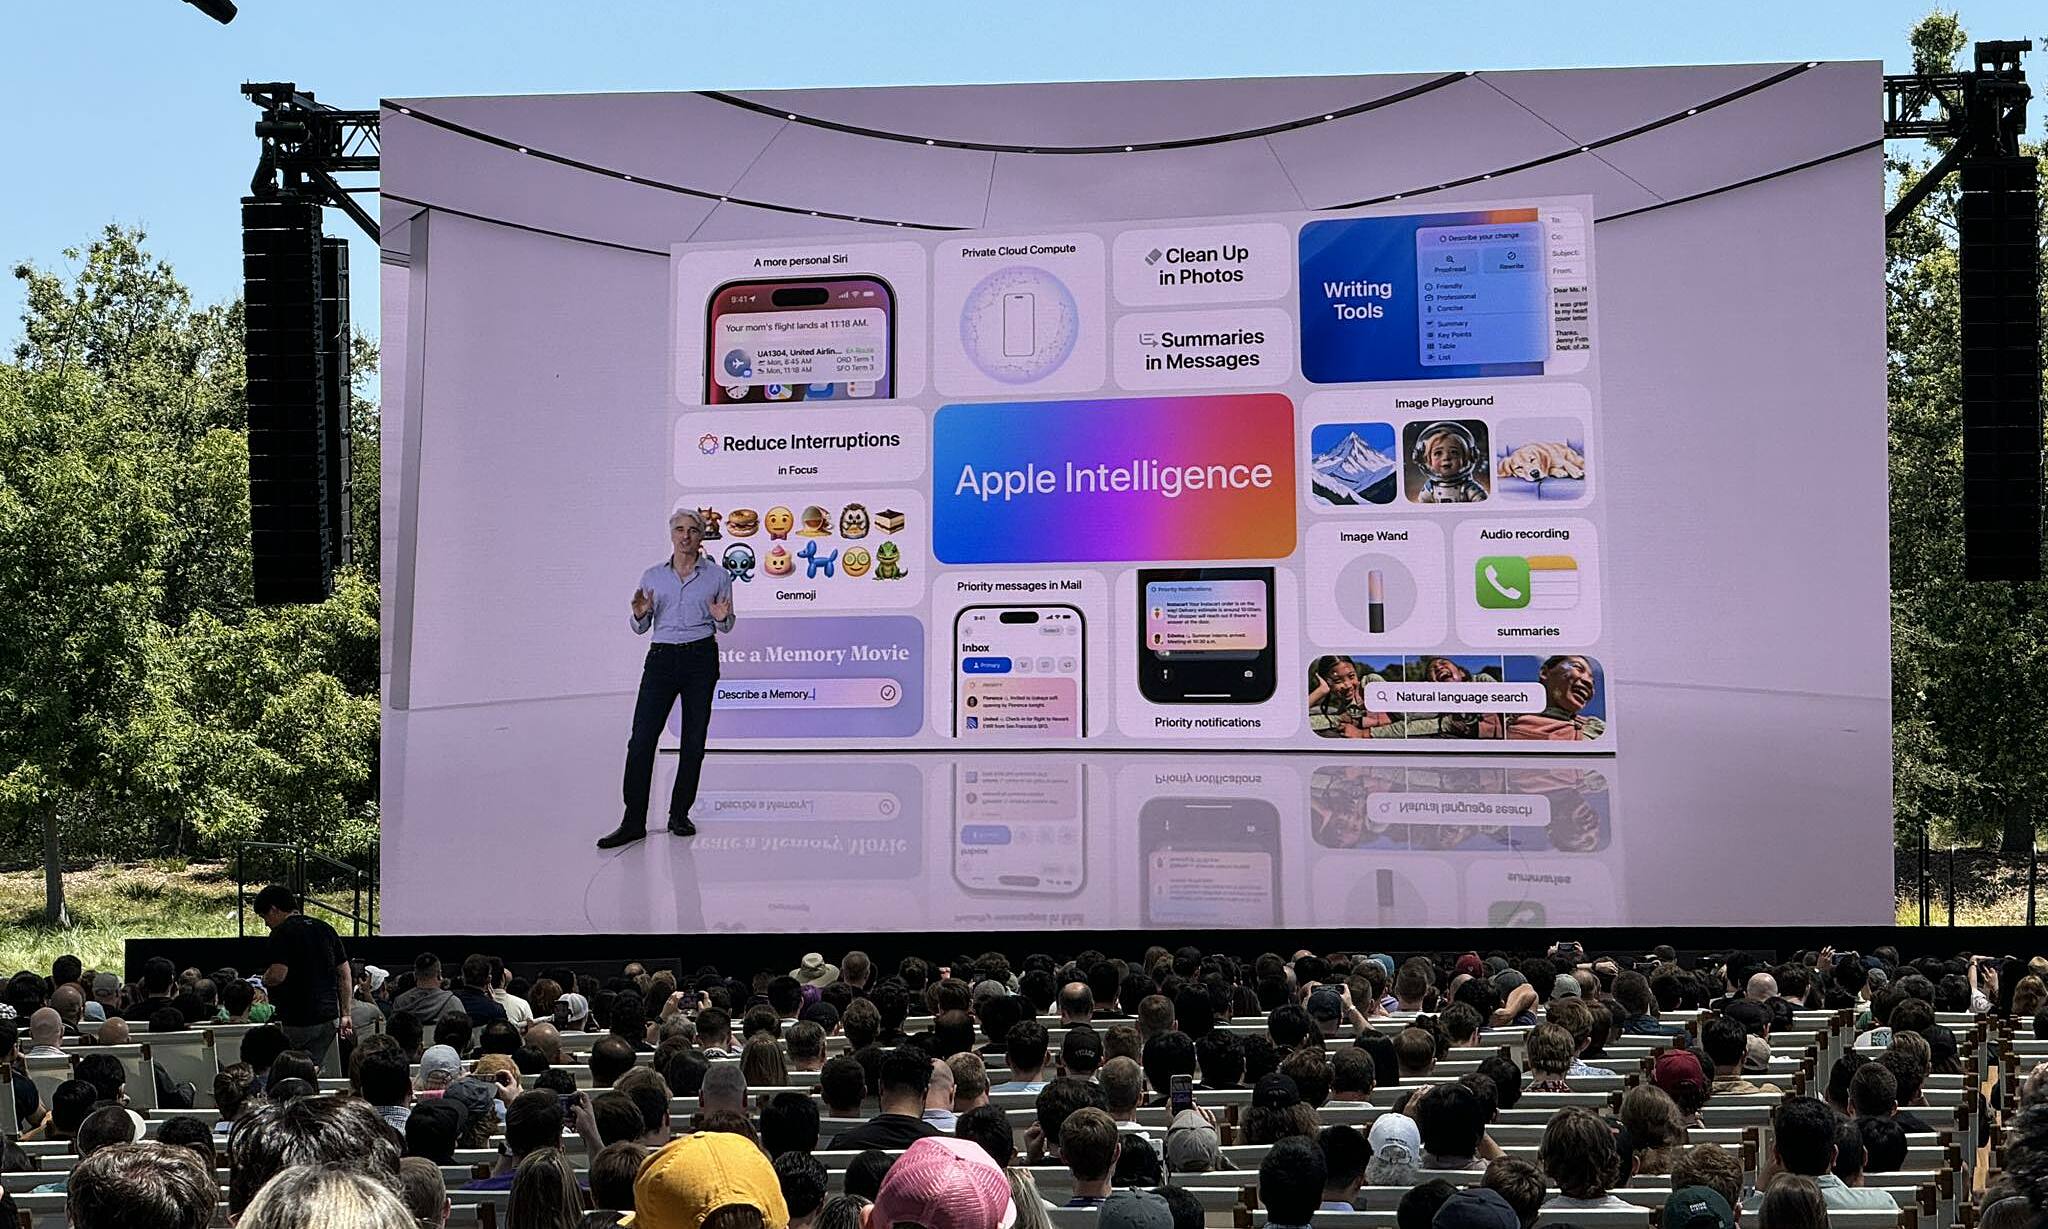 Phó chủ tịch Craig Federighi chia sẻ về Apple Intelligence. Ảnh: Tuấn Hưng